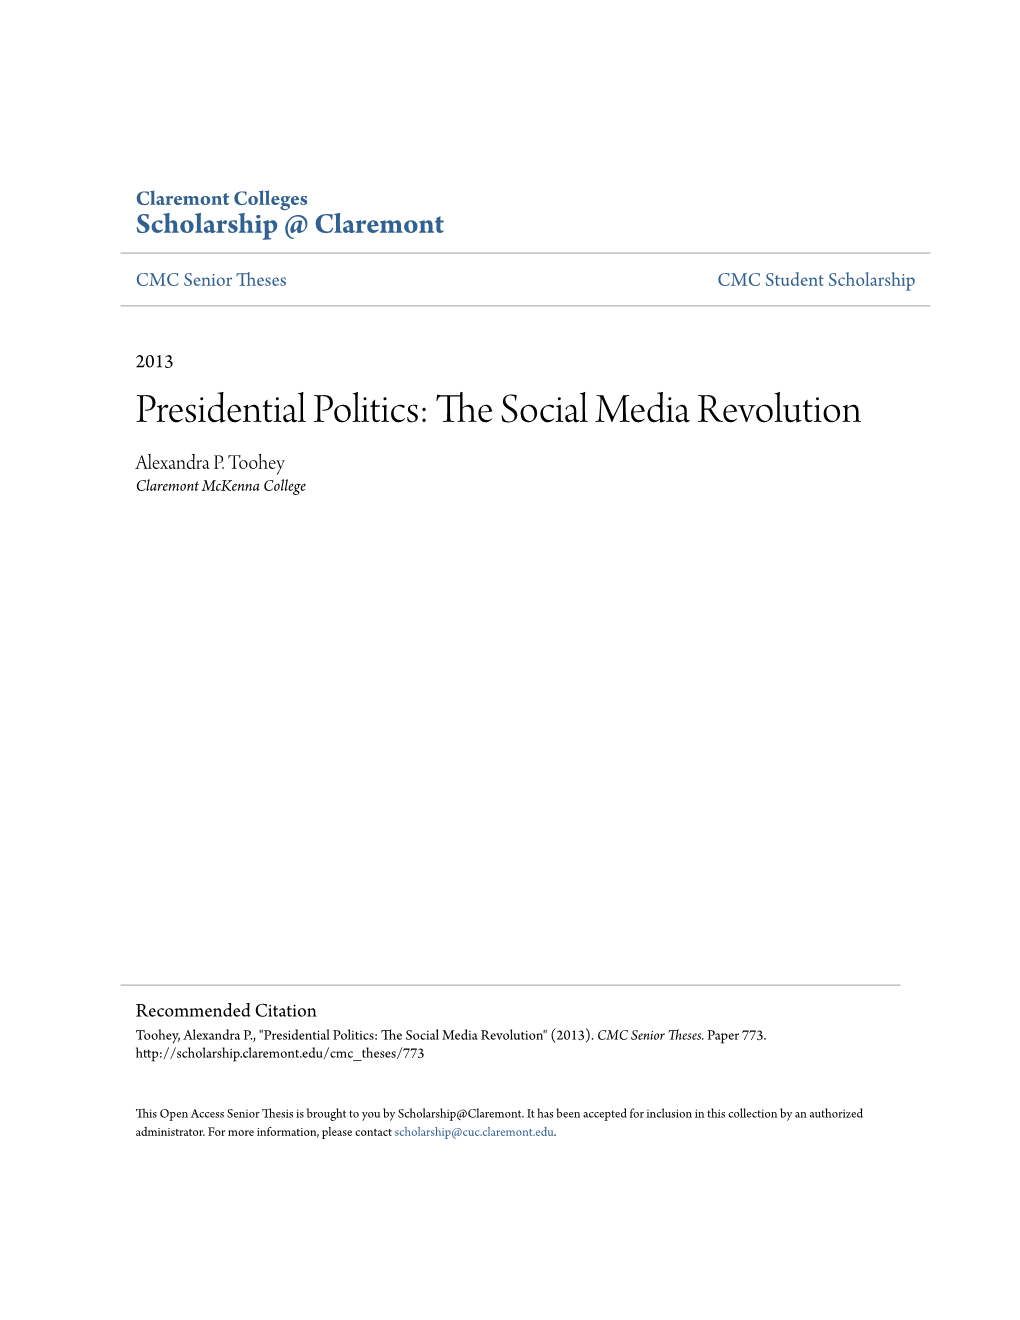 Presidential Politics: the Social Media Revolution